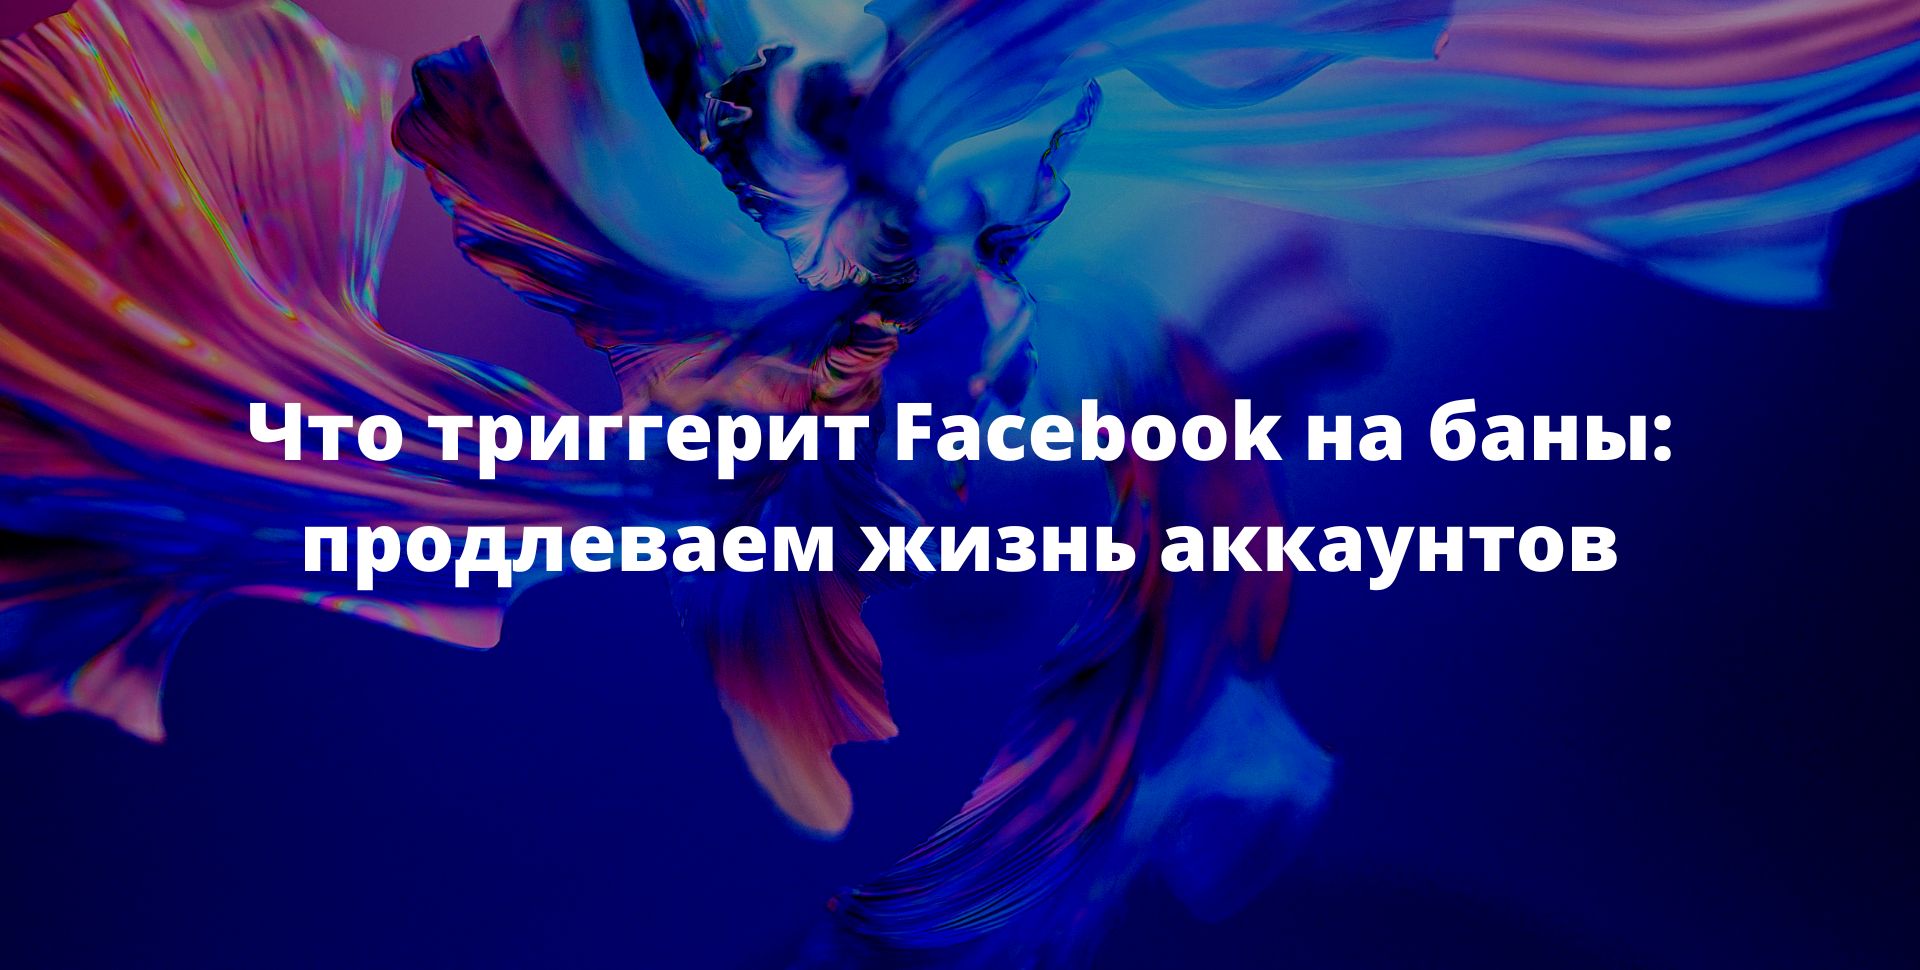 Что триггерит Facebook* на баны: продлеваем жизнь аккаунтов